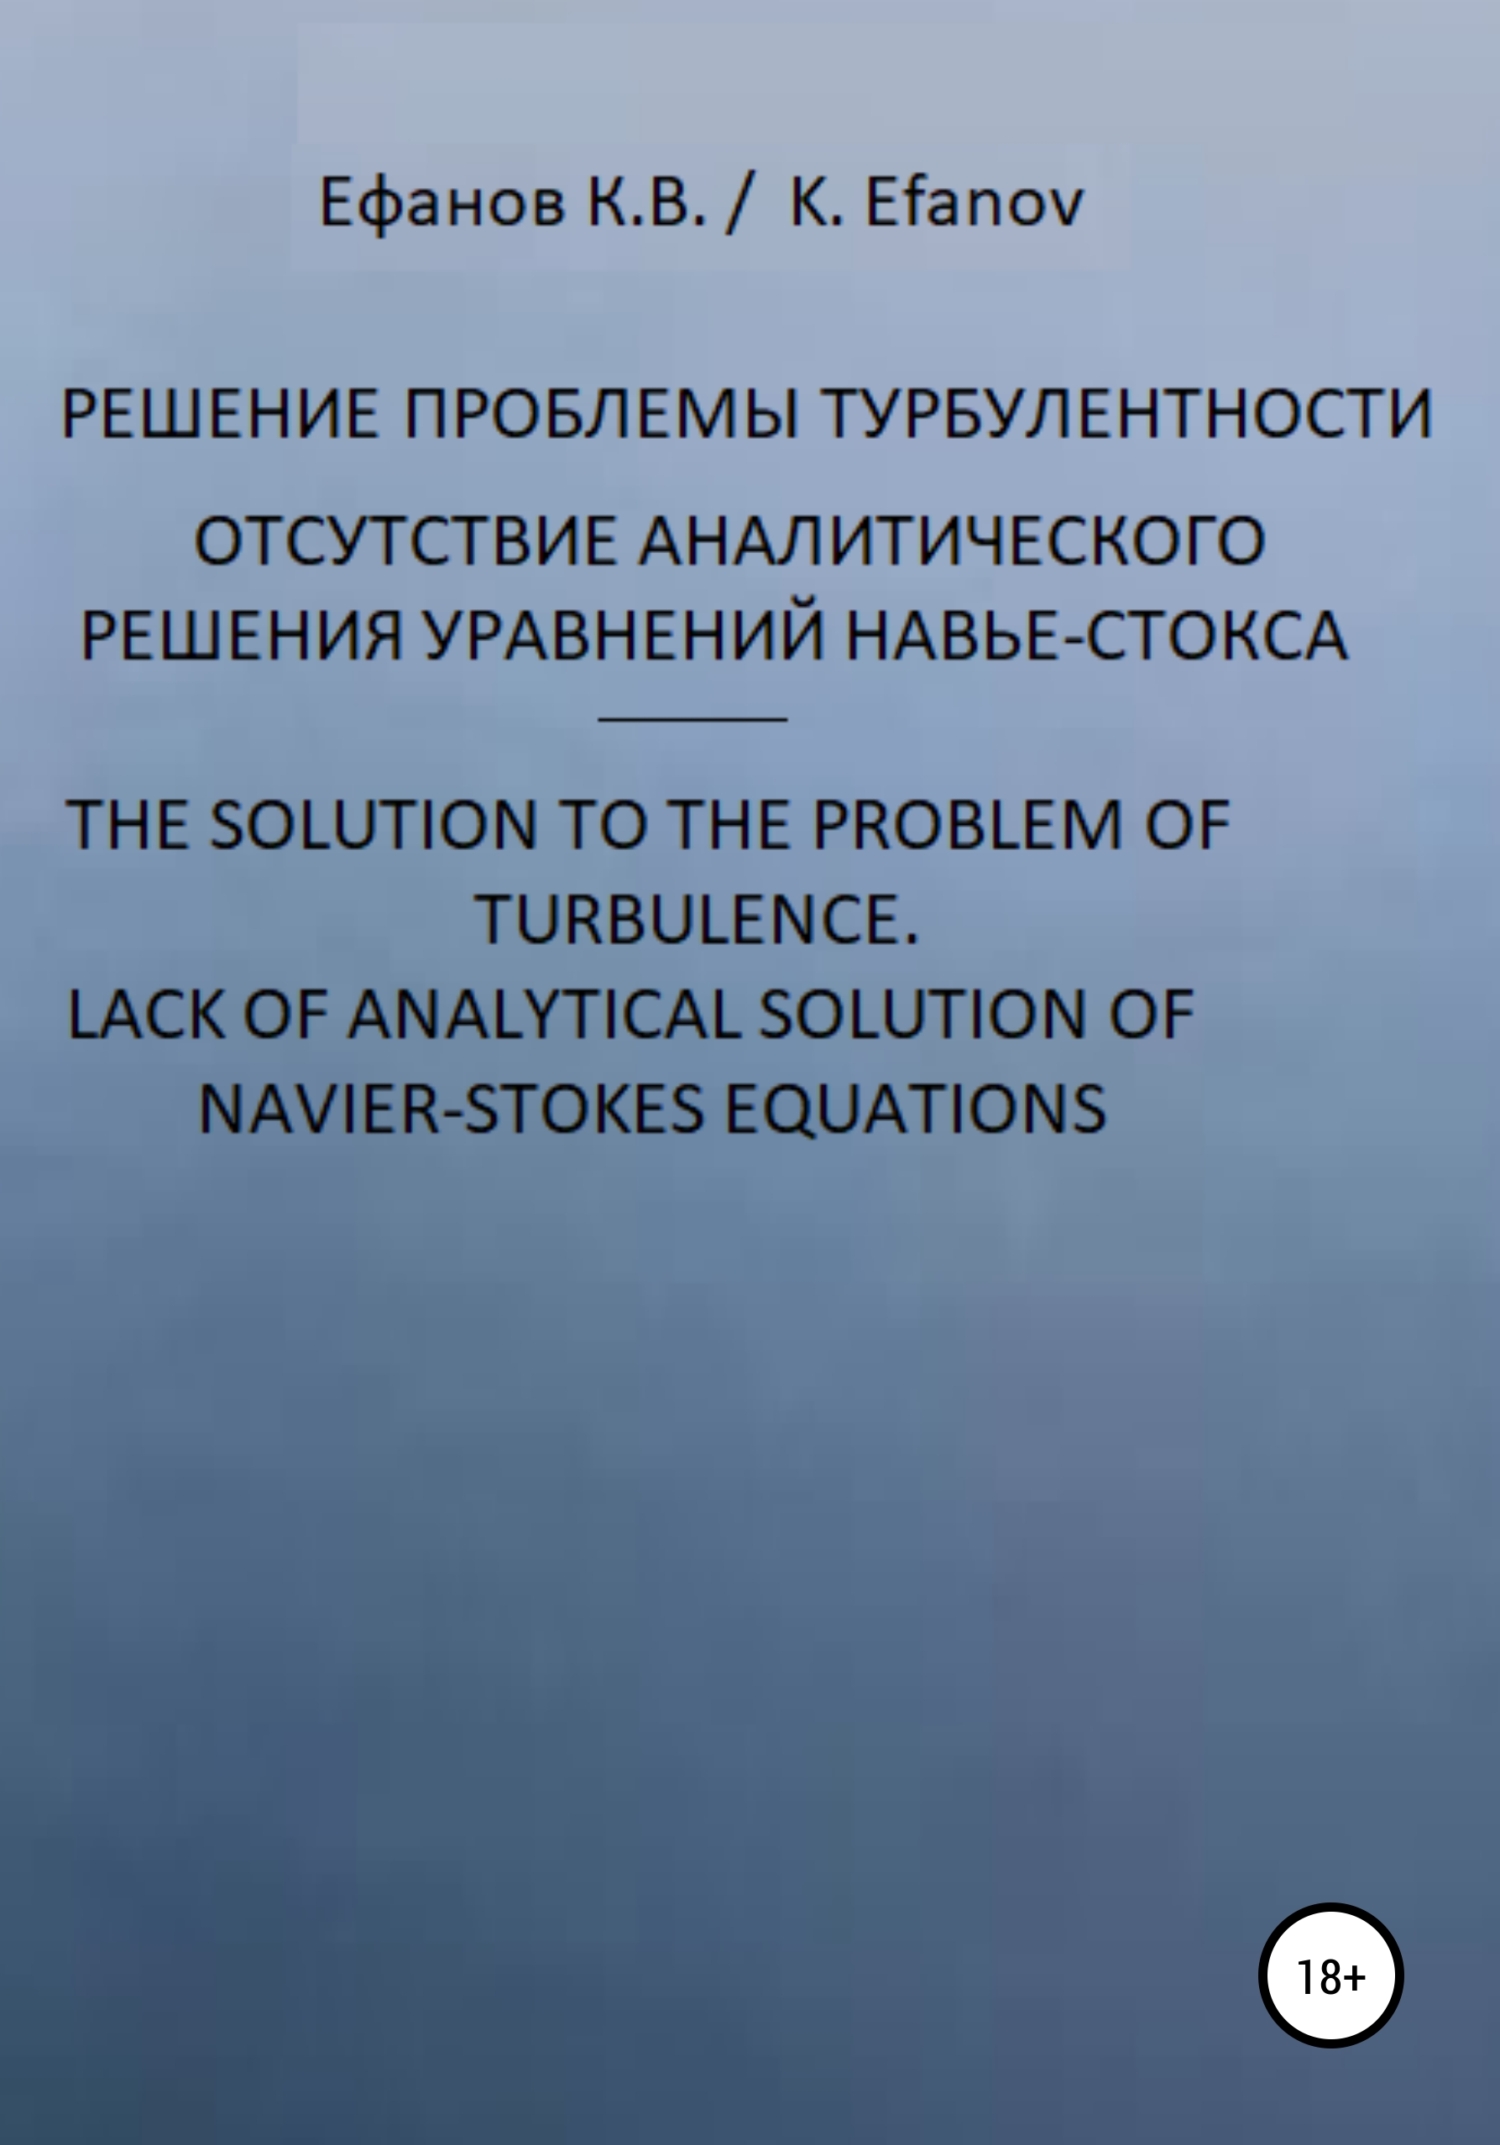 Уравнения Навье-Стокса, отсутствие решения / Navier-Stokes equations, no solution